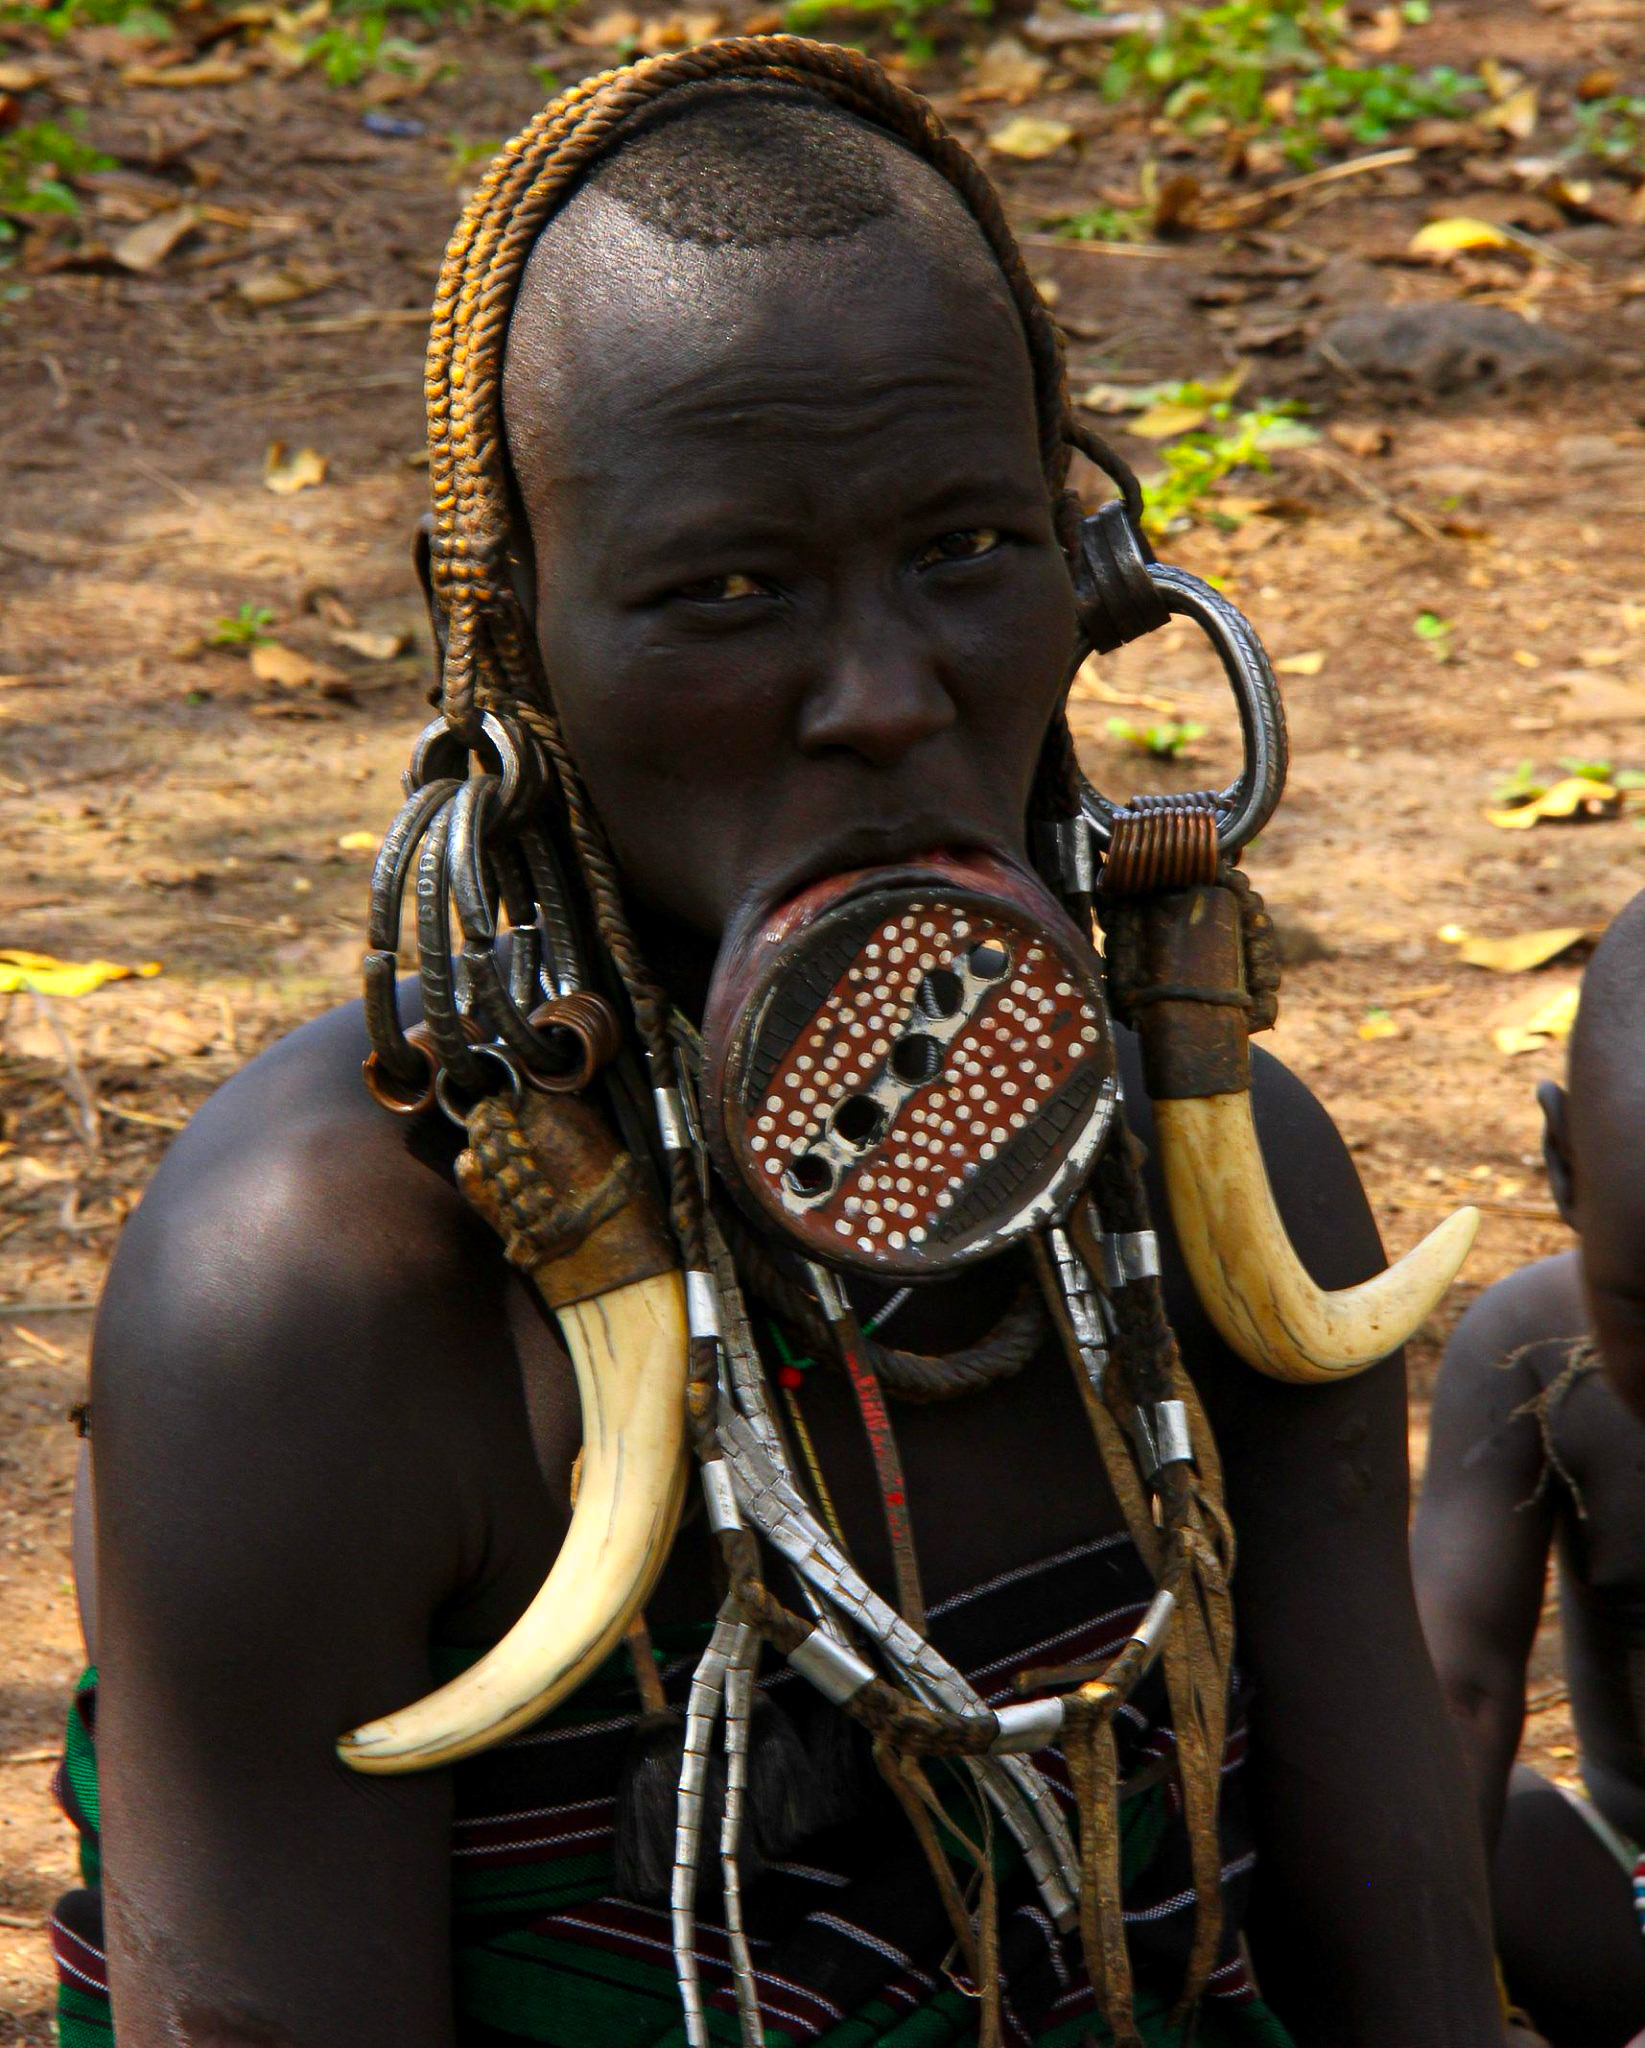 mursi tribe of ethiopia